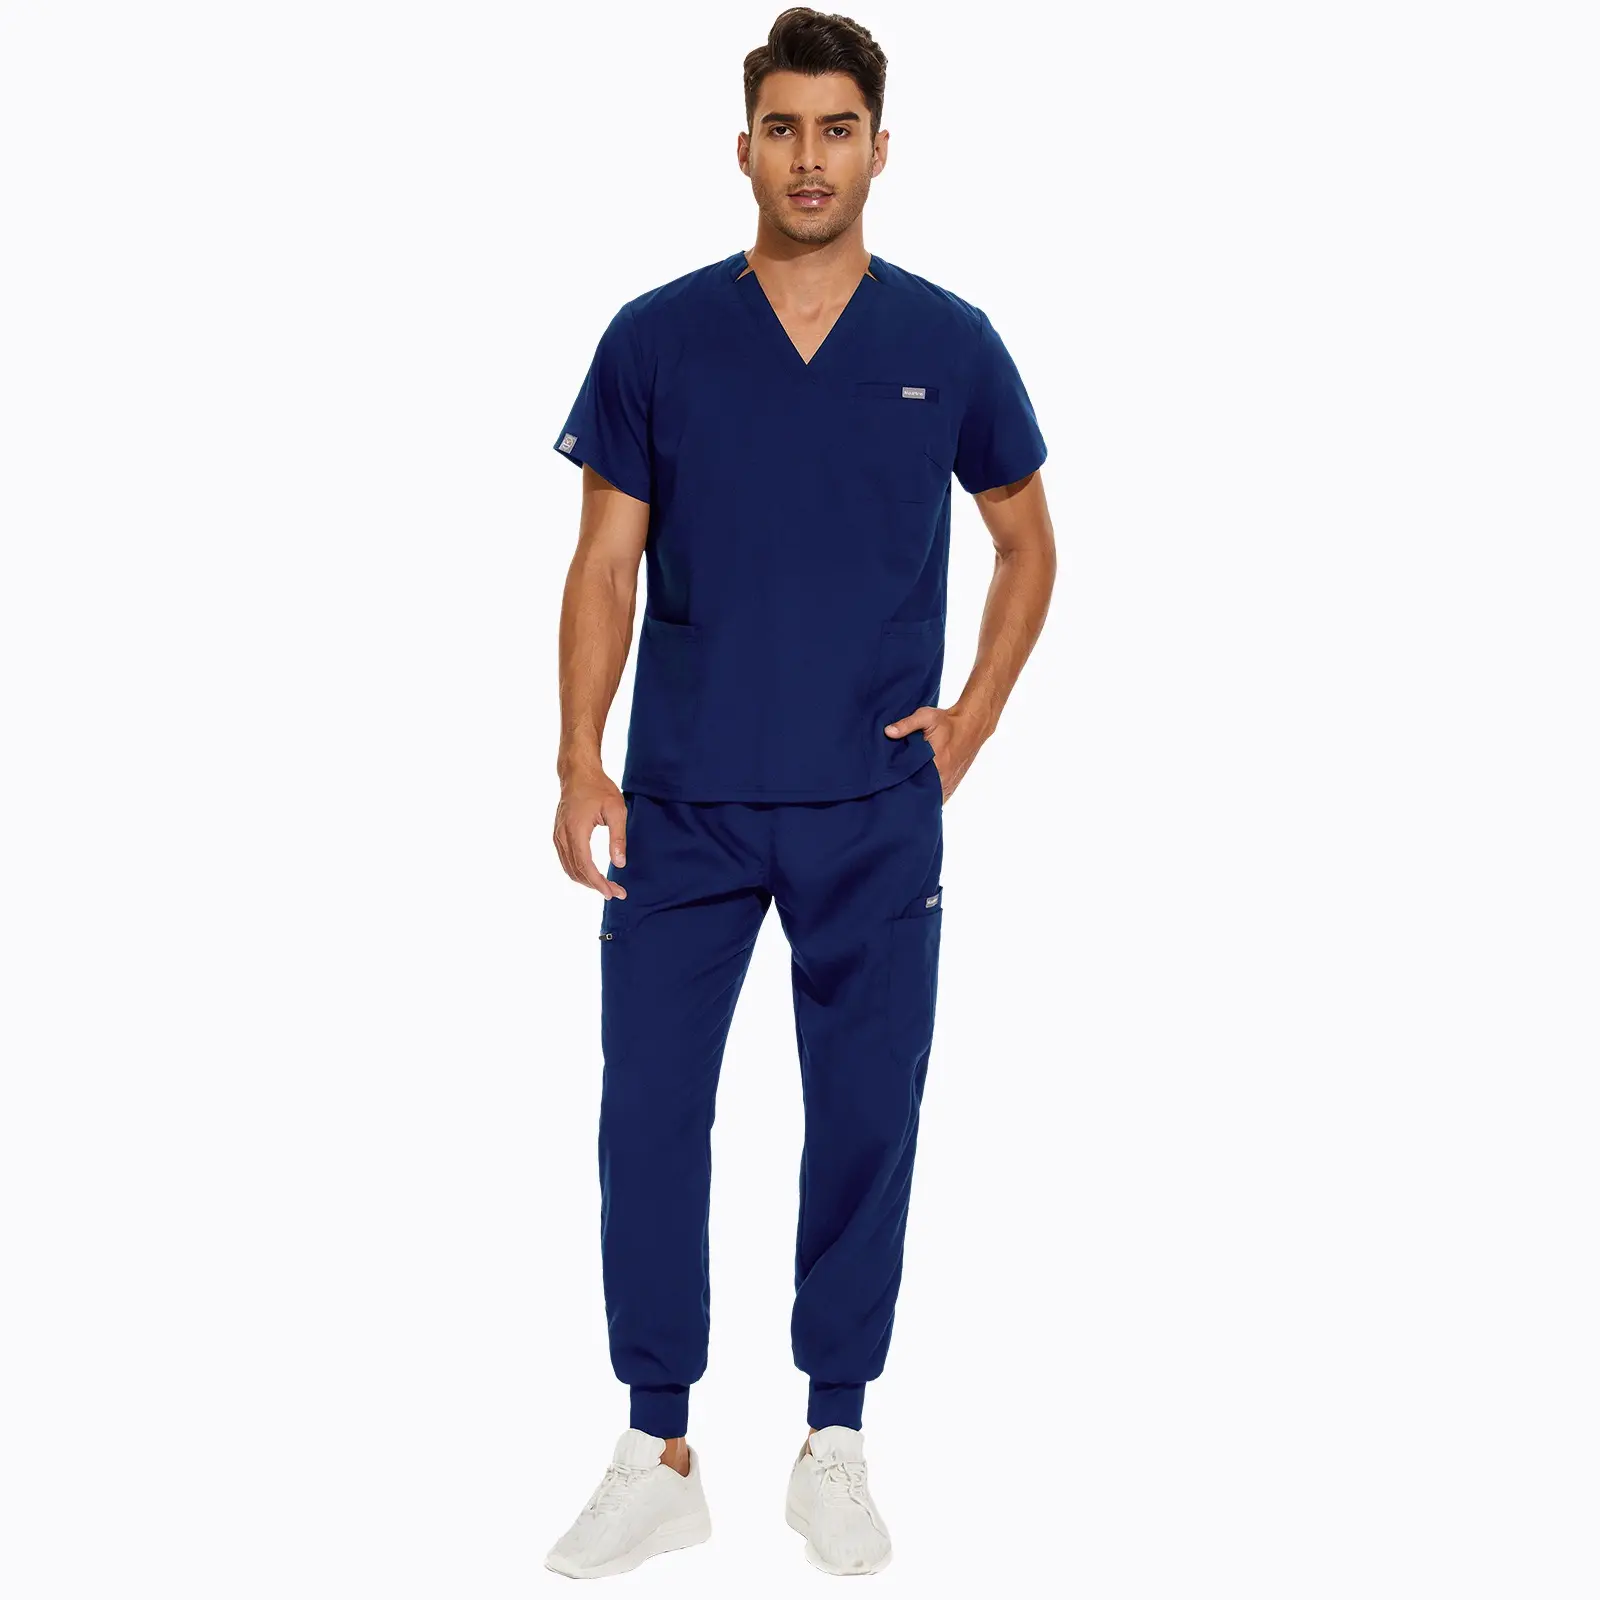 2023 modèles à la mode Scrubs uniformes ensembles costume médical hôpital infirmière médecin uniforme